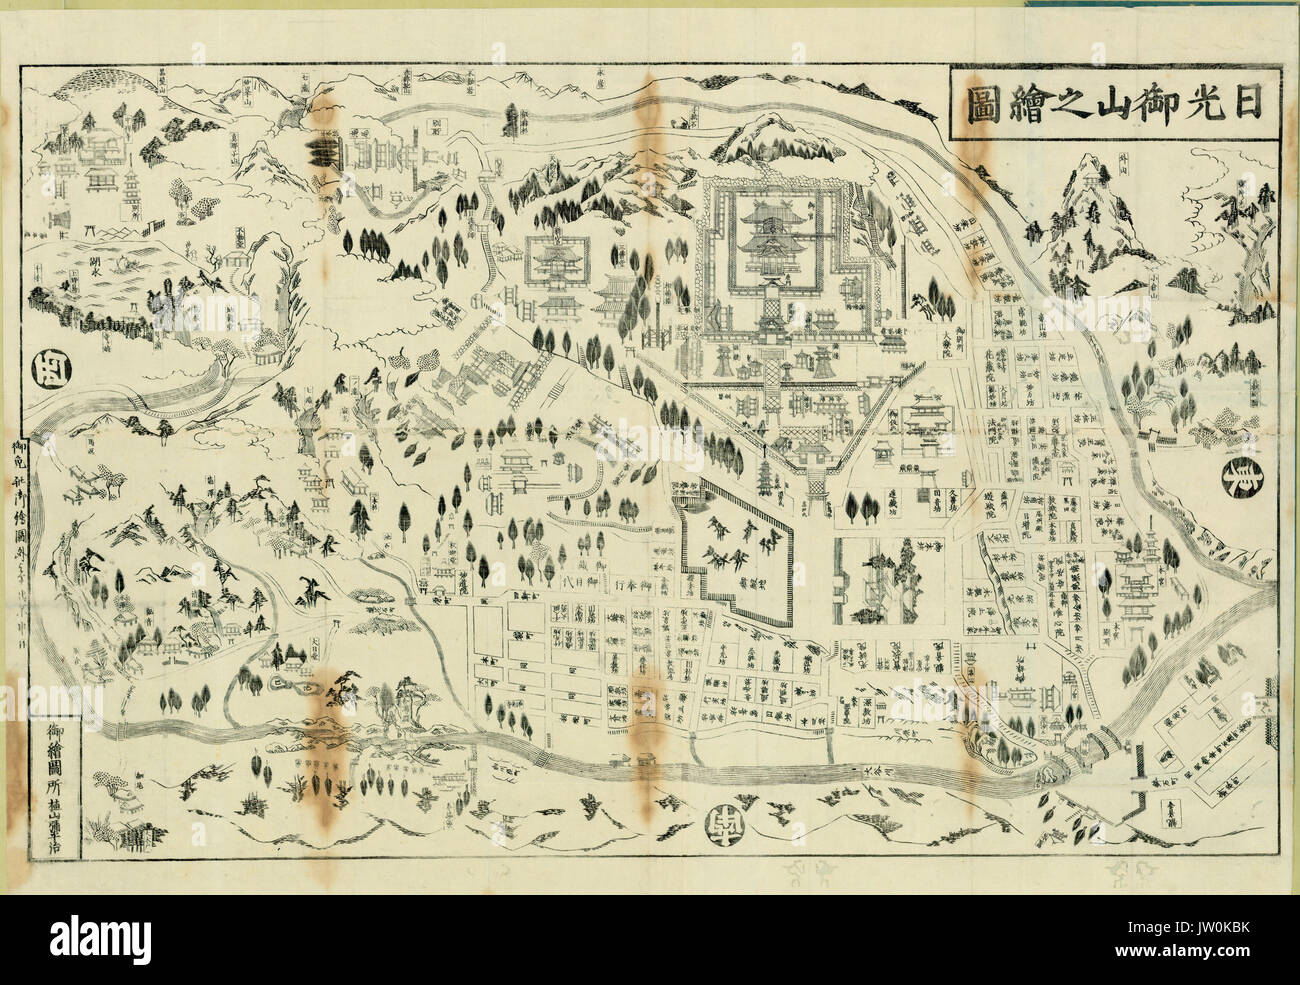 Mappa di Nikkō Mountain - Giapponese Mappe e stampe dell'era Tokugawa - Alternativa Titolo: Nikko  oyama n. ezu creatore: [ignoto] Data di pubblicazione: 1800 Foto Stock